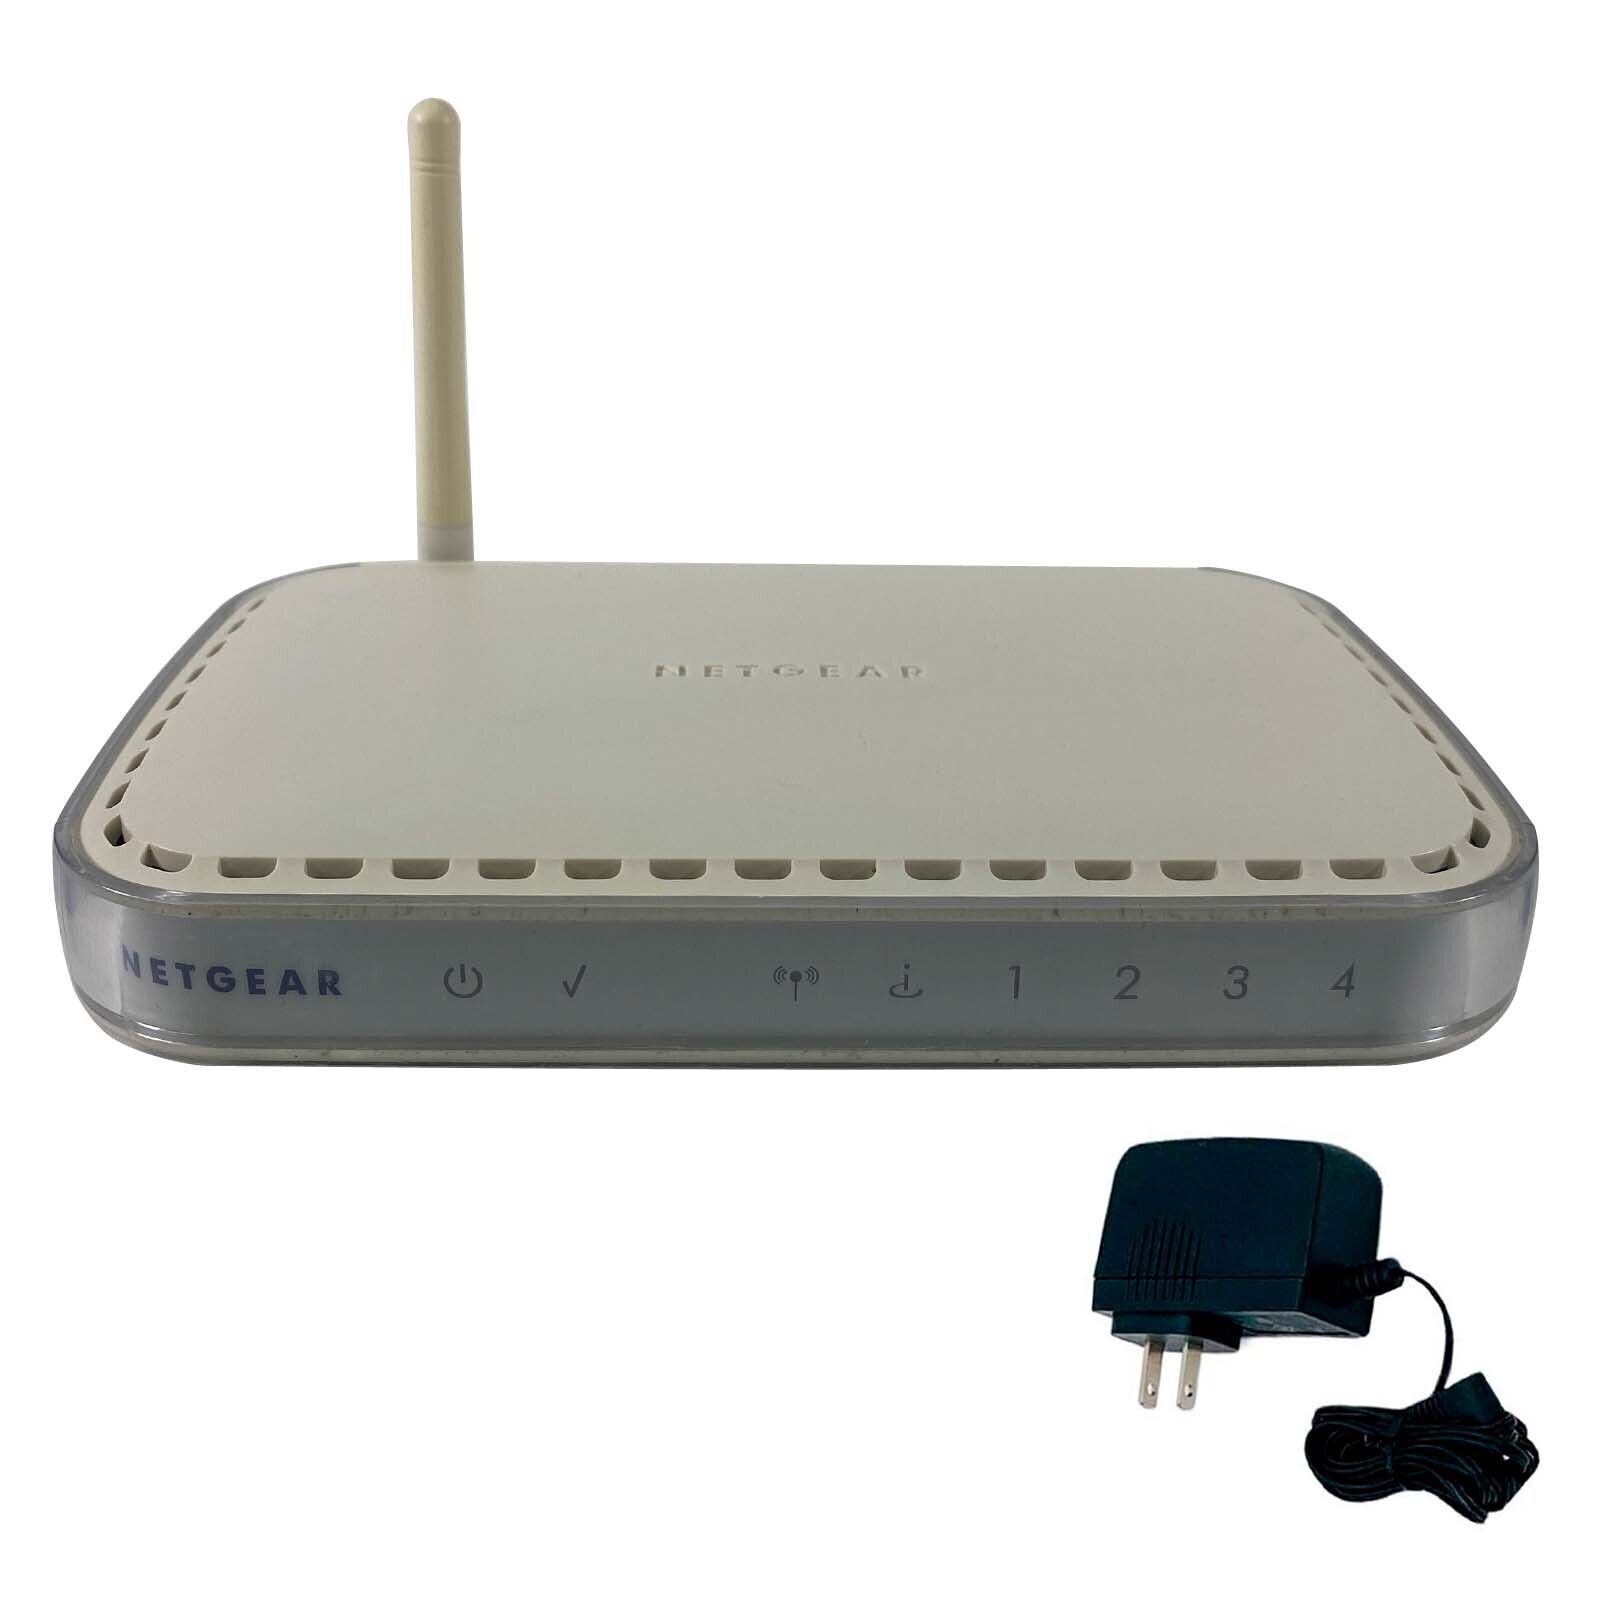 NETGEAR WGT624 v4 108 Mbps 4-Port Wireless Firewall Router w/ Adapter